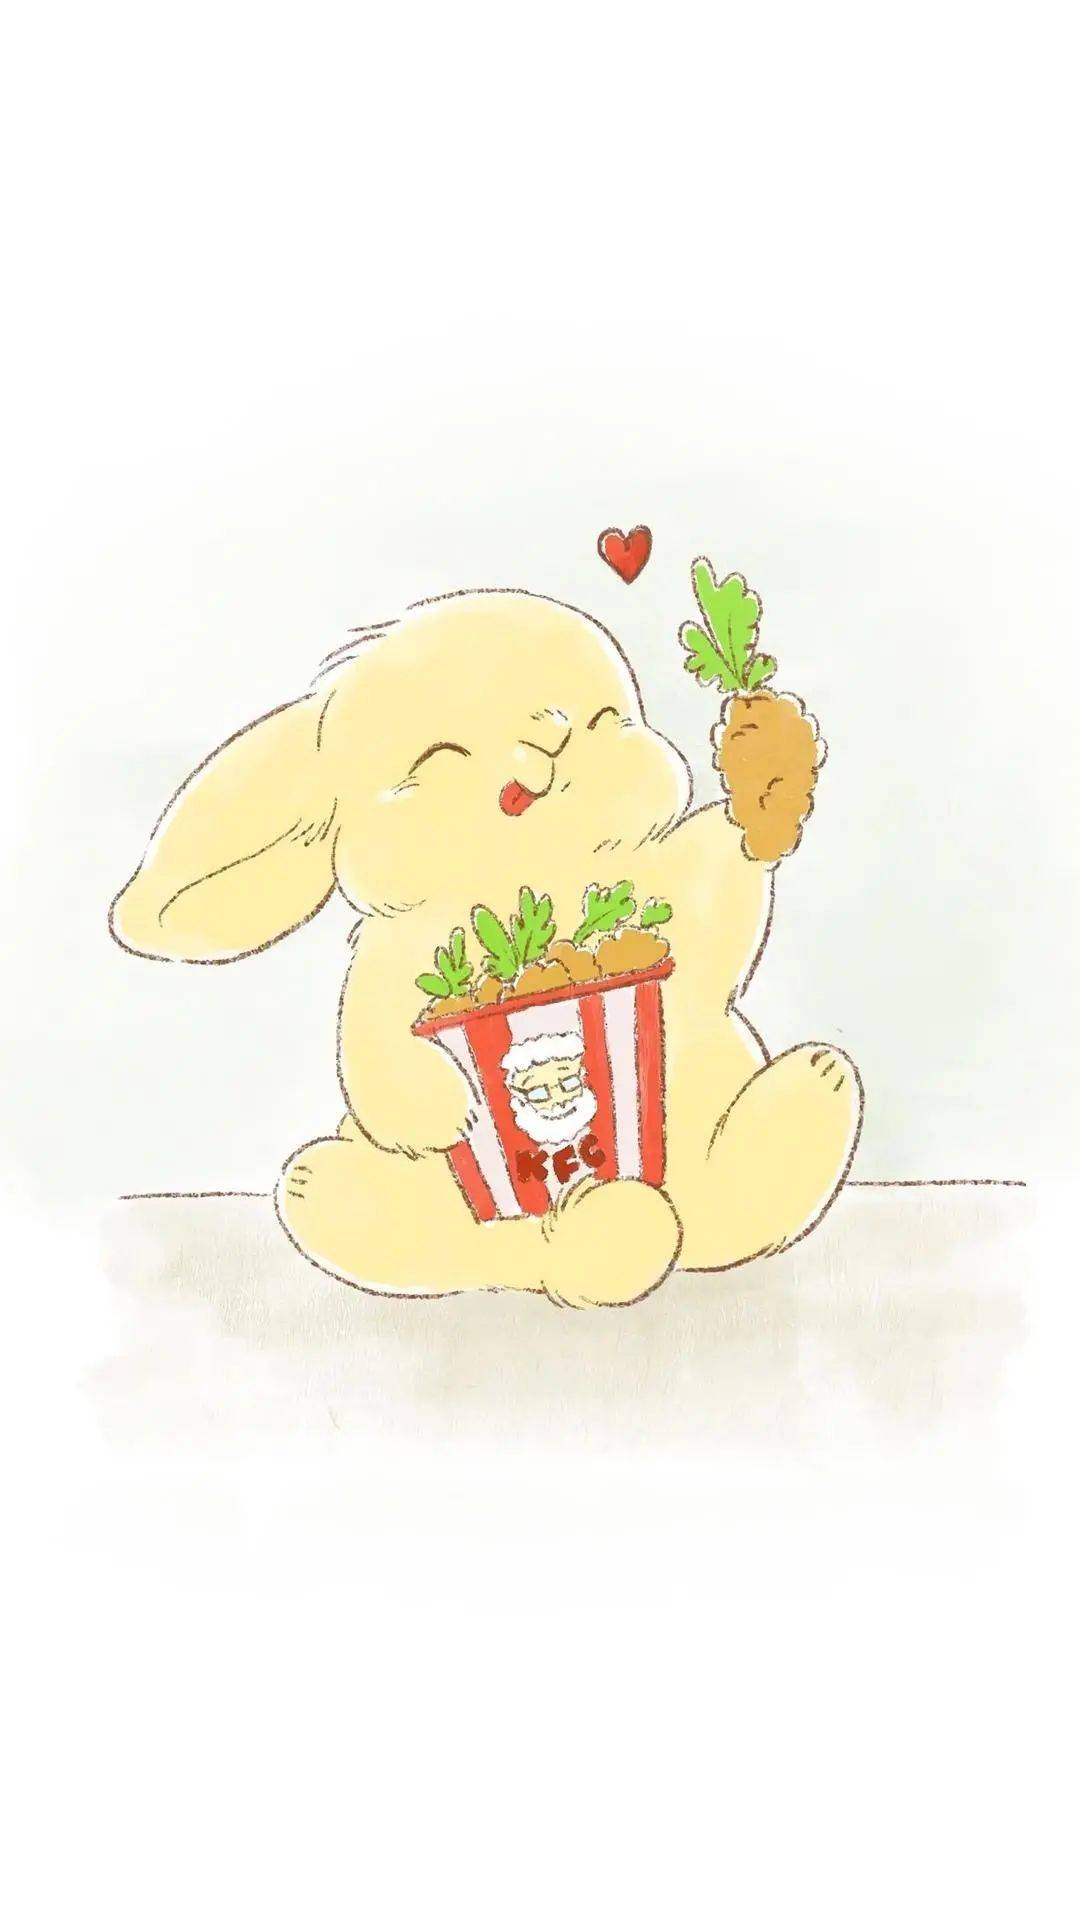 可爱的小兔子甜味弥漫图片